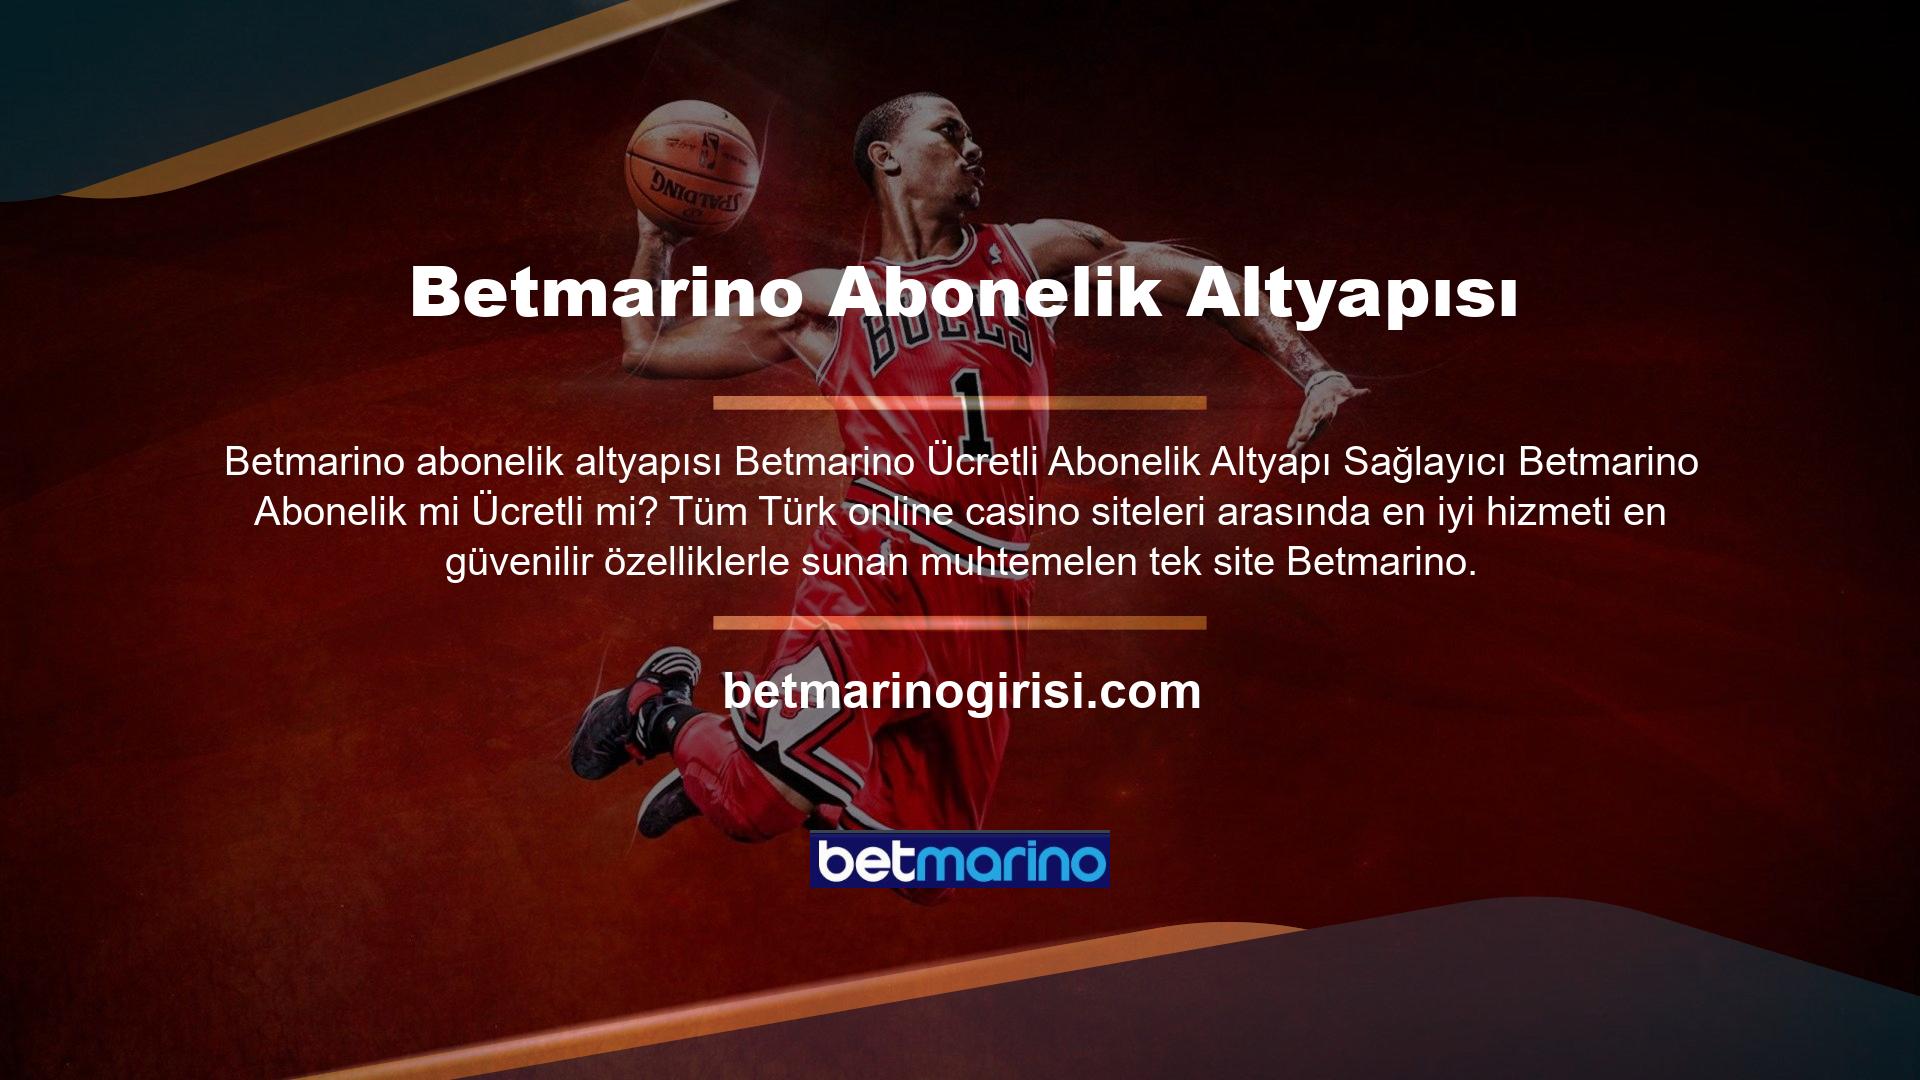 Bu durumda “Betmarino ücreti ödendi mi?” Betmarino katılmak için bir ücret veya altyapı var mı? Ancak herhangi bir ücreti yoktur ve 18 yaşını doldurmuş her Türk vatandaşı bir online casino sitesine üye olabilir